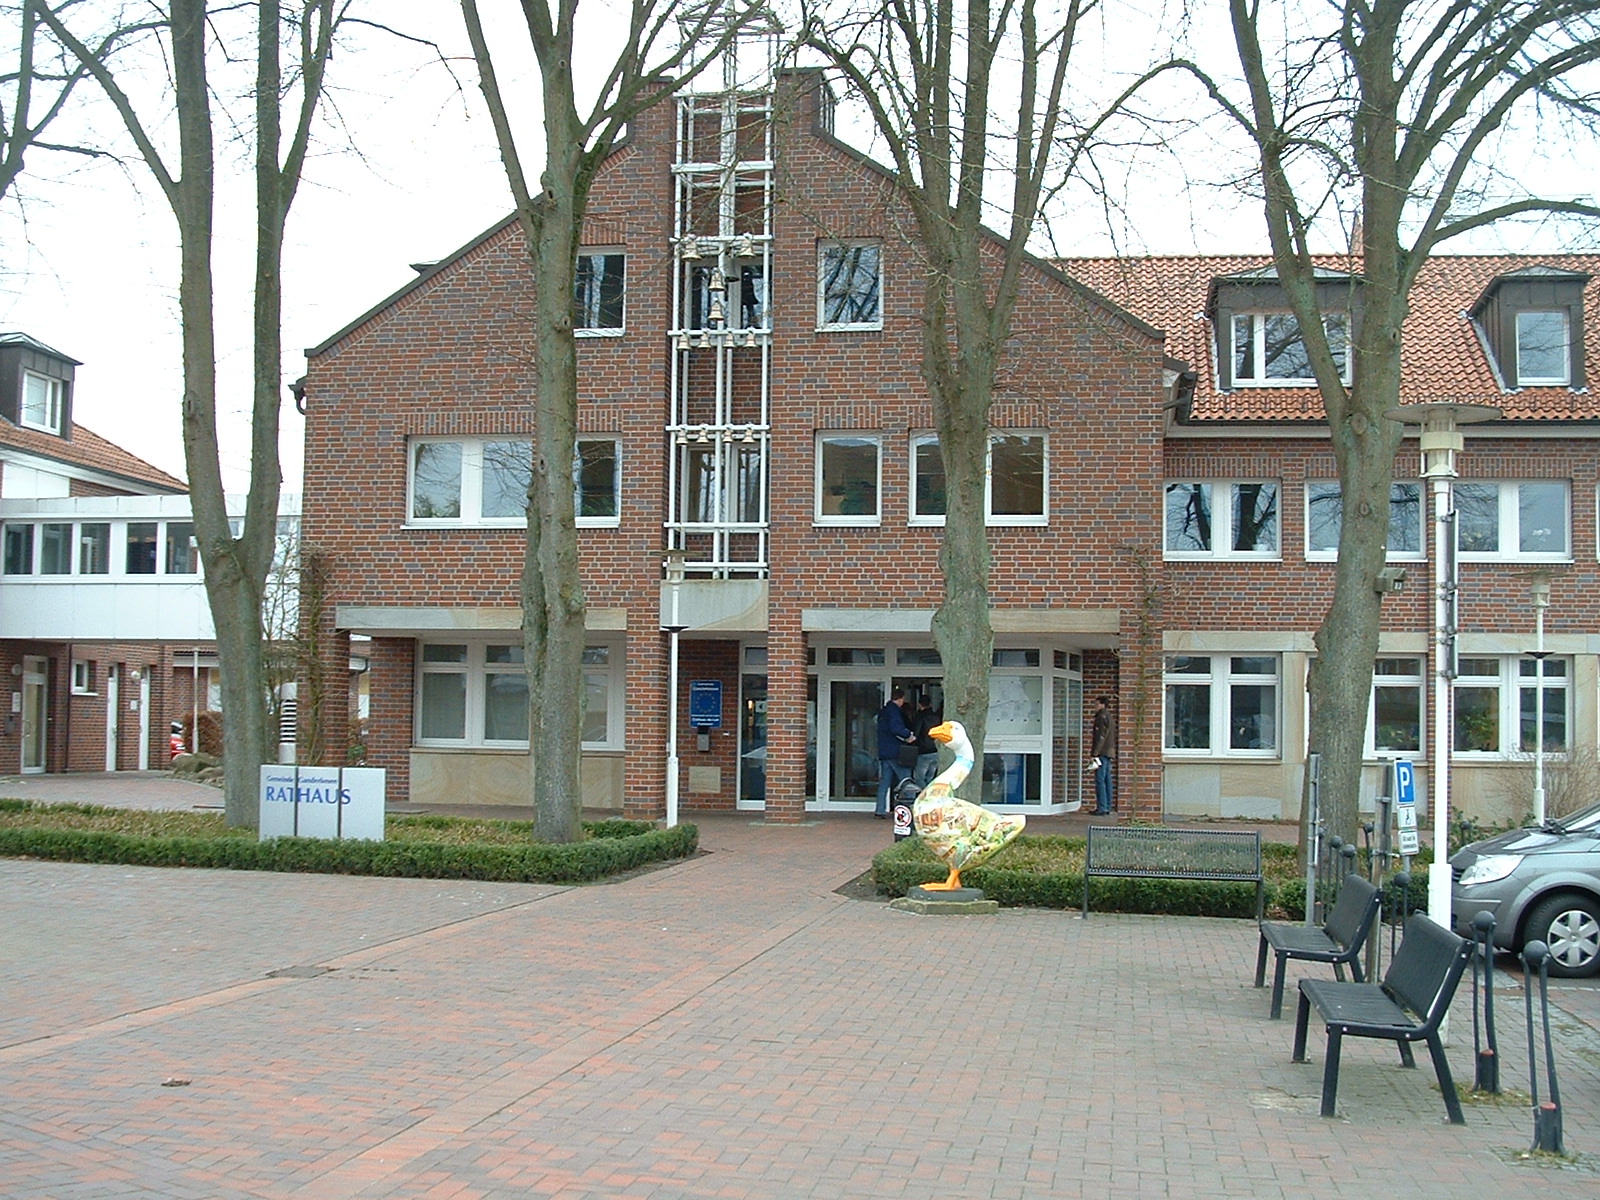 Rathaus der Gemeinde Ganderkesee